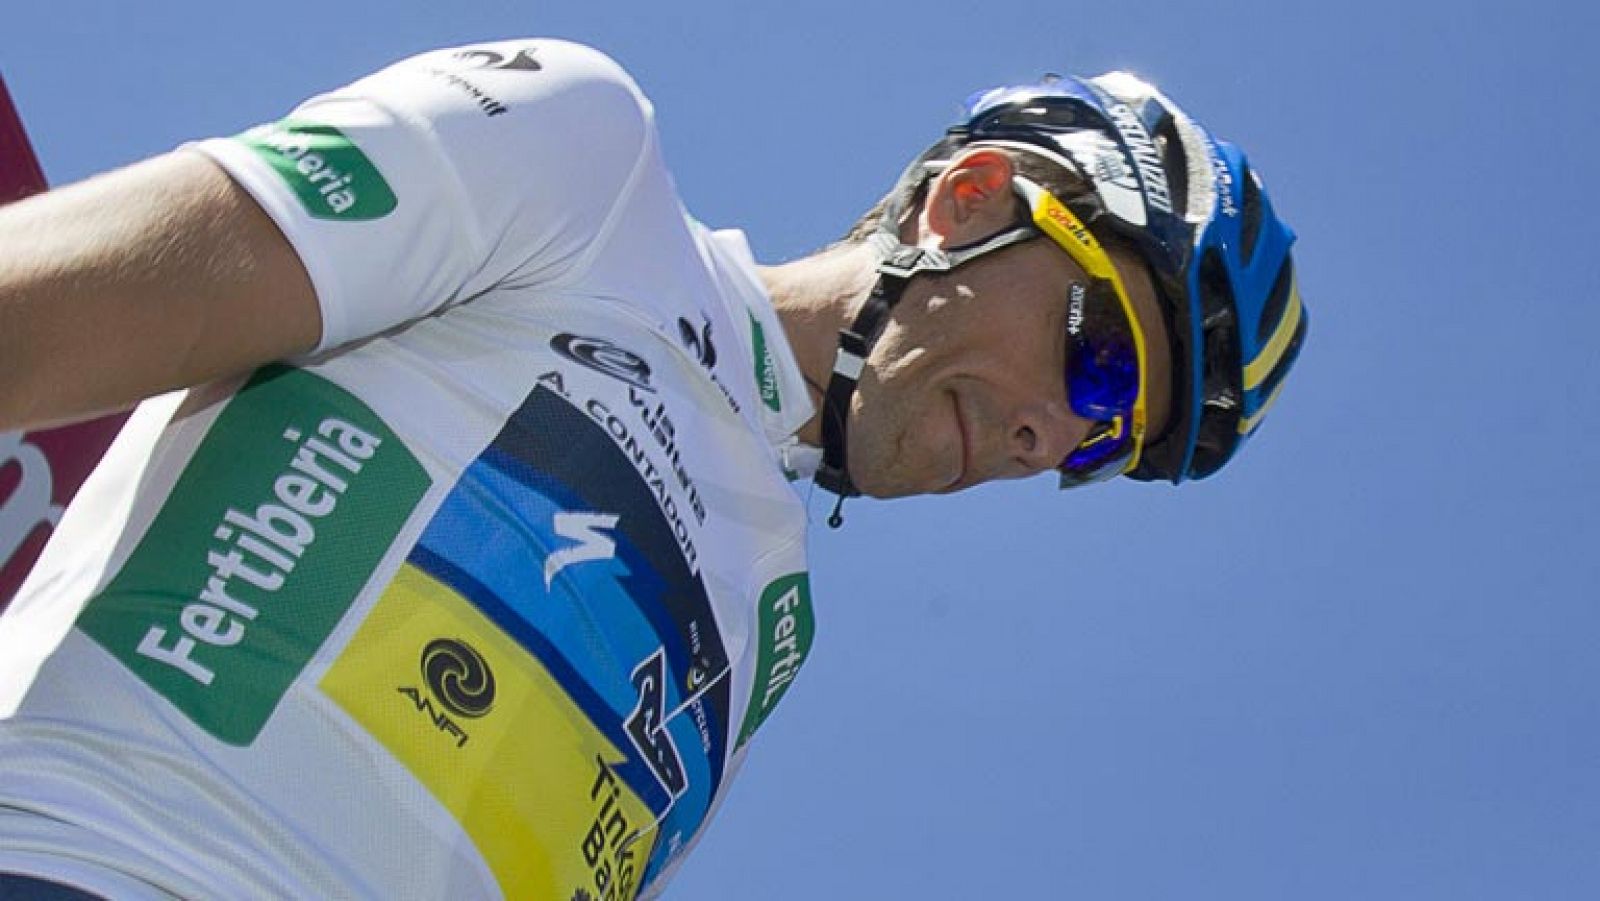 Joaquim 'Purito' Rodríguez ha dado un golpe de mando en la subida a Ancares de la Vuelta a España, respondiendo al ataque de su principal rival, Alberto Contador, y arrebatándole la victoria de etapa.